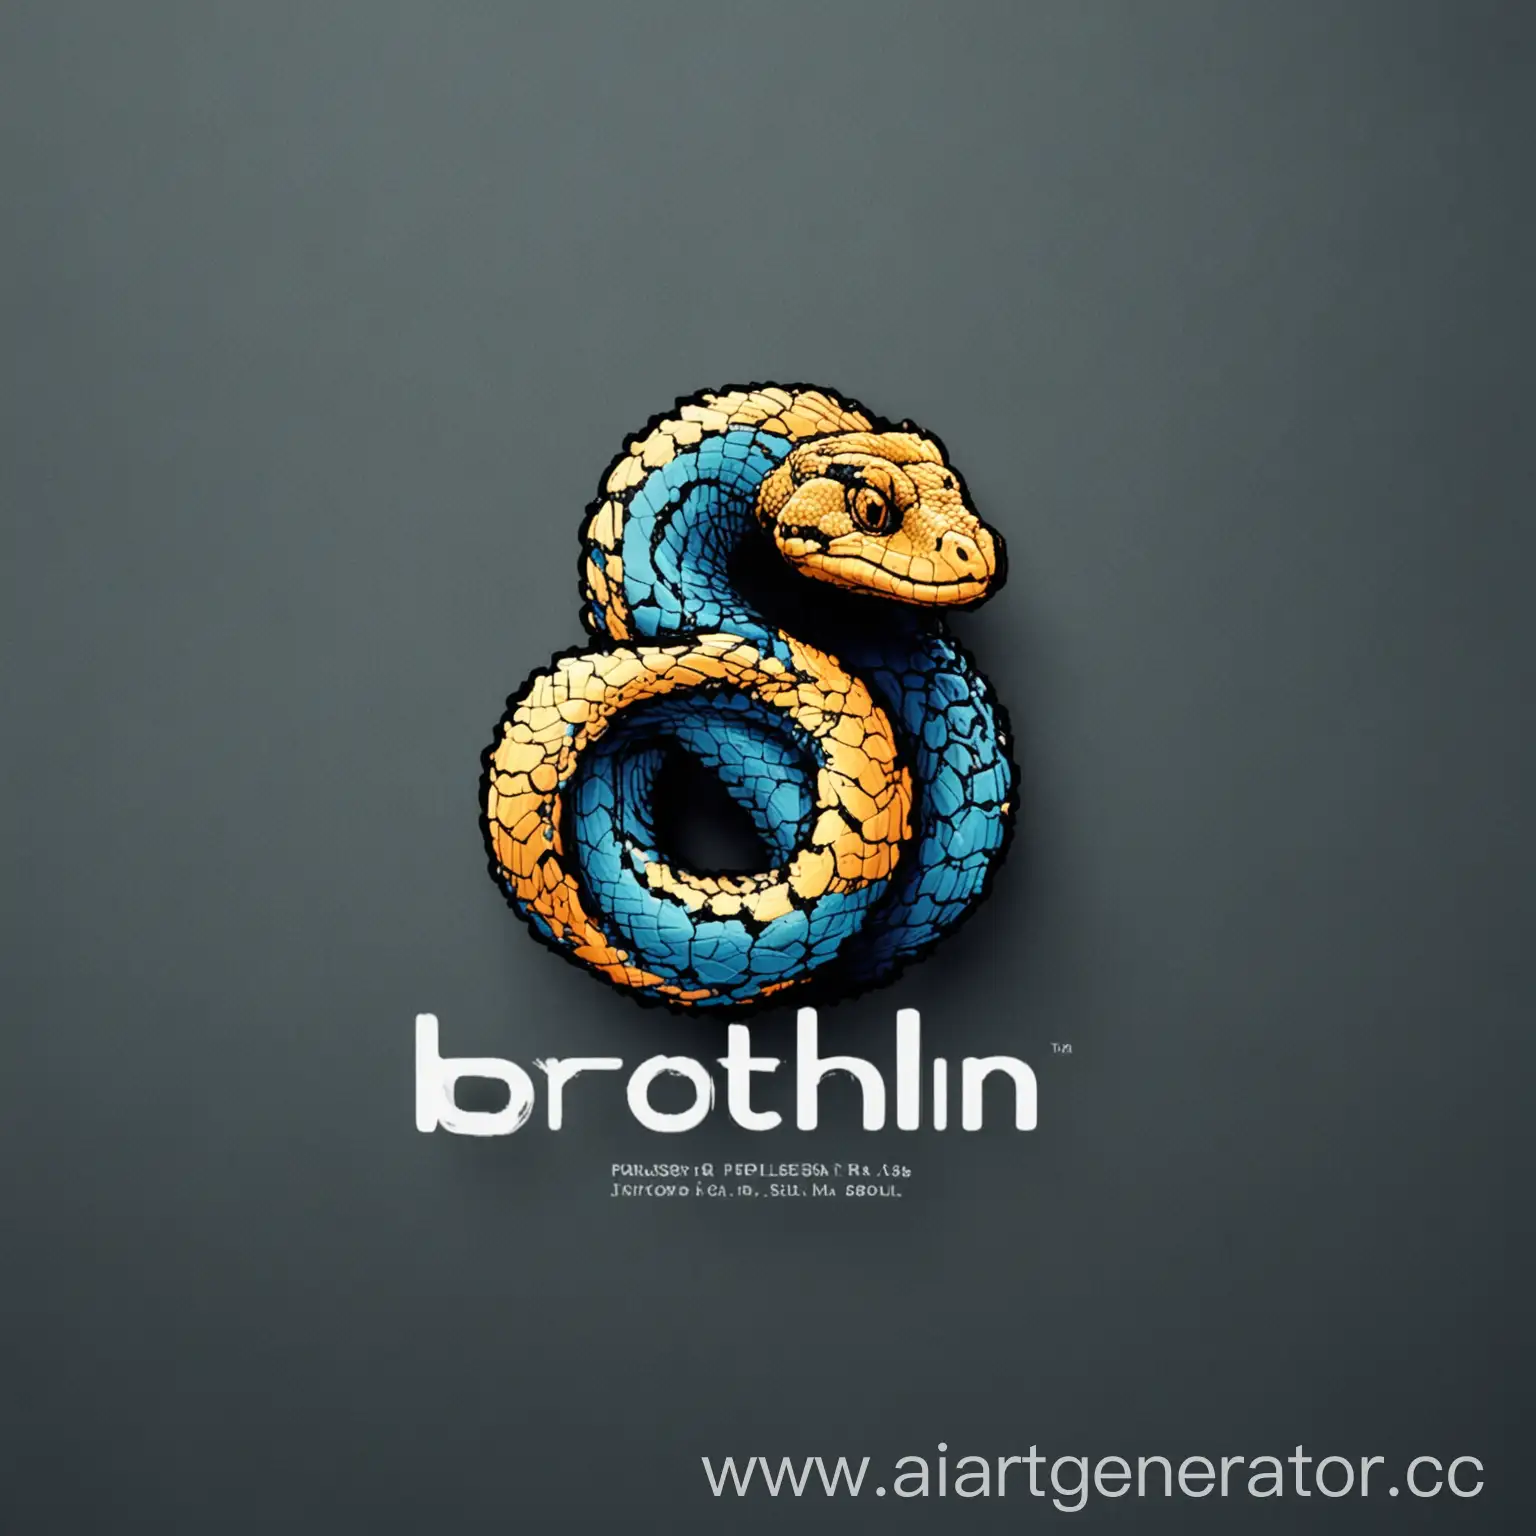 Логотип компании BrotherLin которая занимается программированием на языках python, html, css. Картинка должна быть в стиле программирования, с логотипами этих языков программирования и с надписью "BrotherLin"